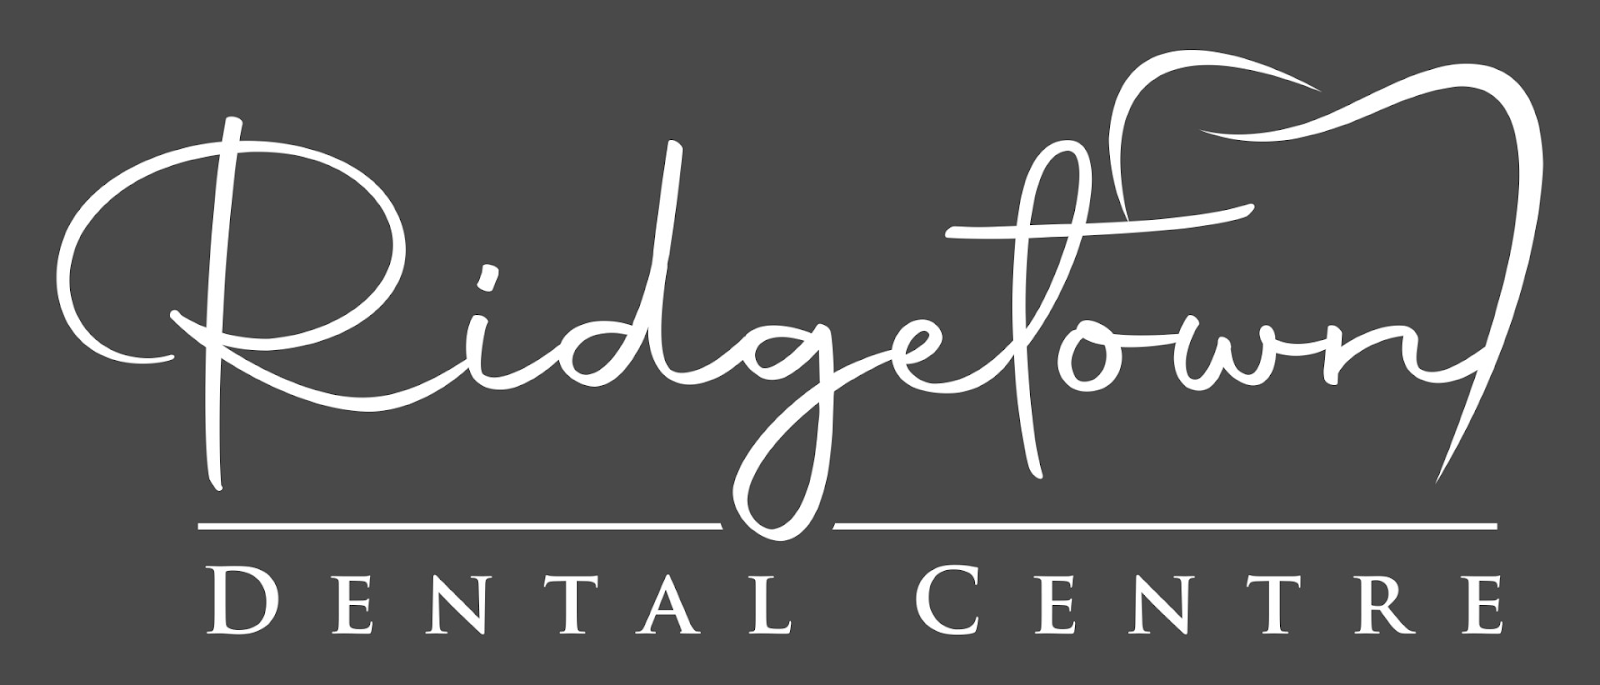 Ridgetown Dental Centre